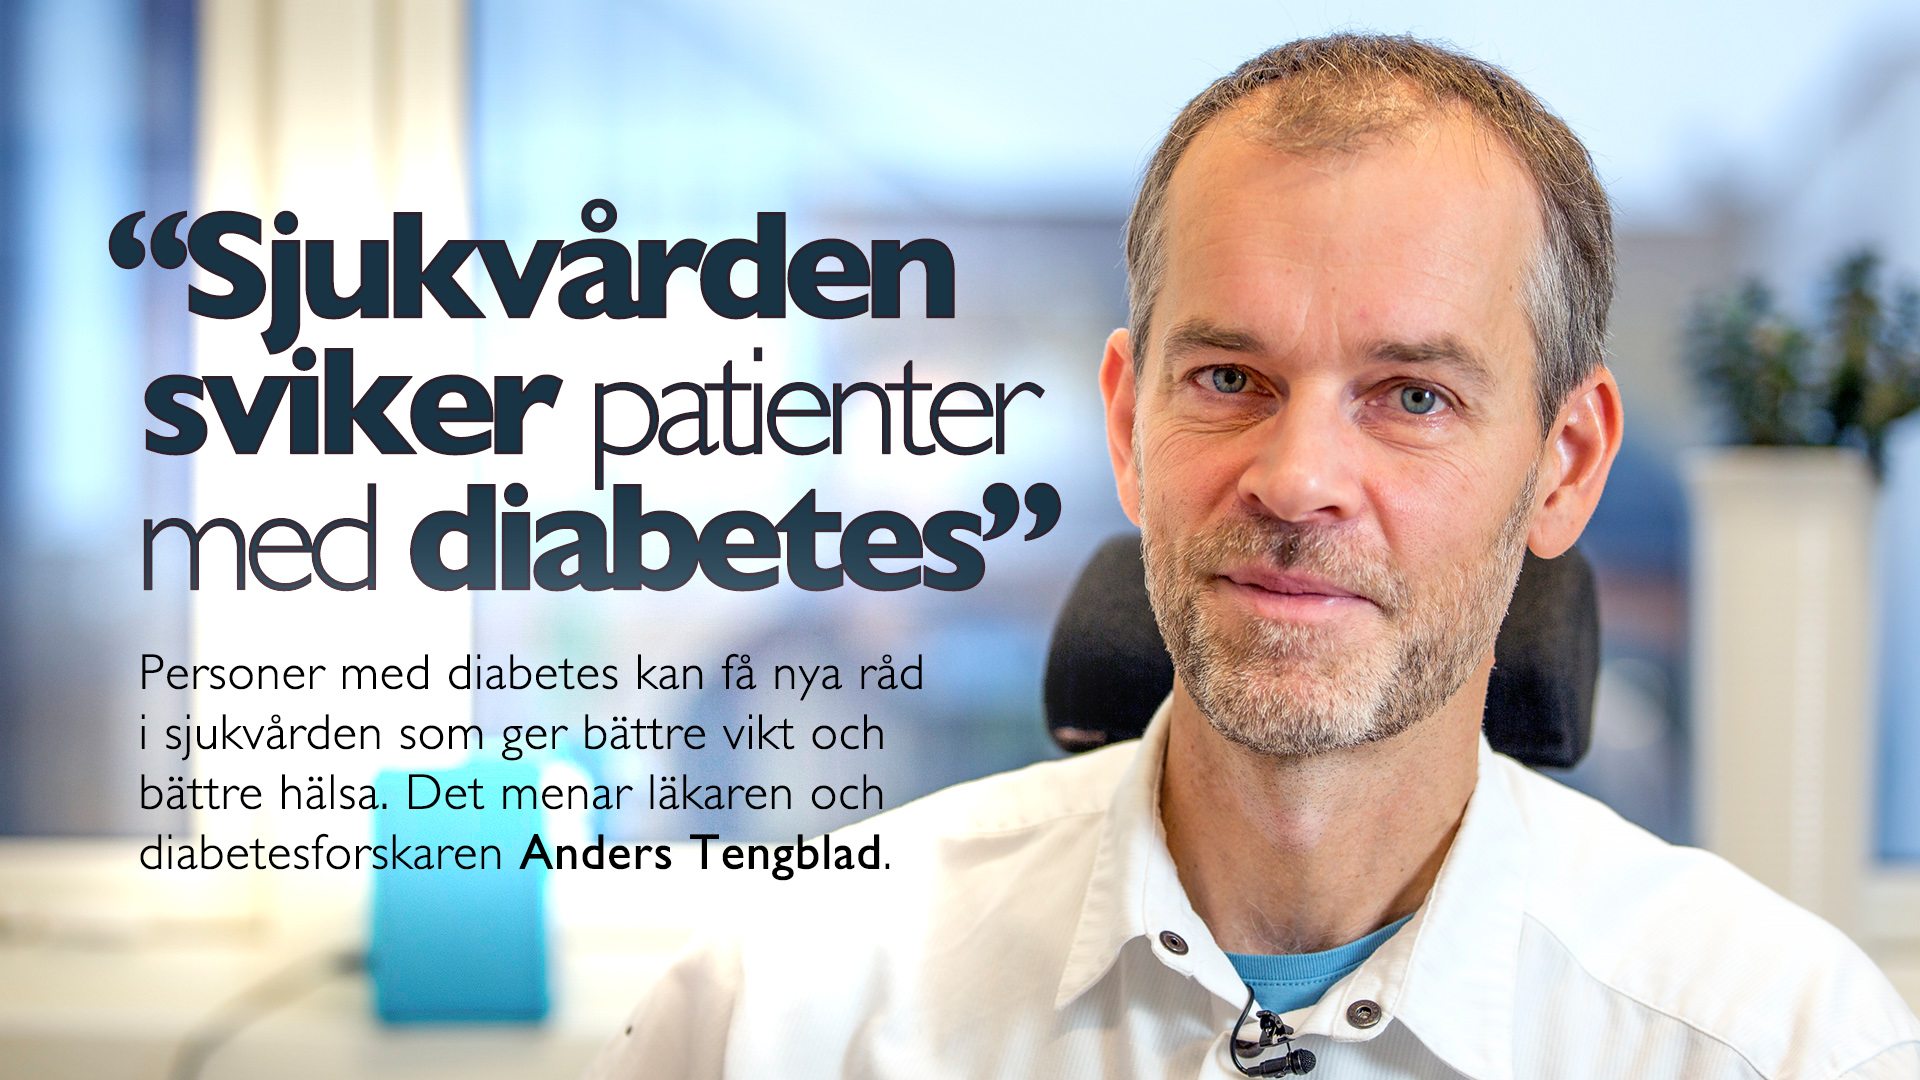 "Sjukvården sviker patienter med diabetes"